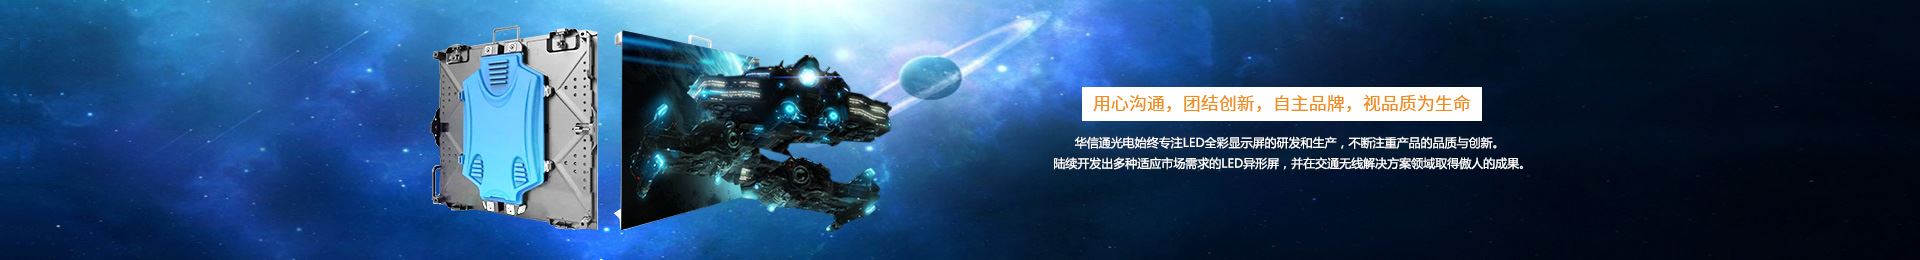 深圳市星际娱乐平台下载科技有限公司